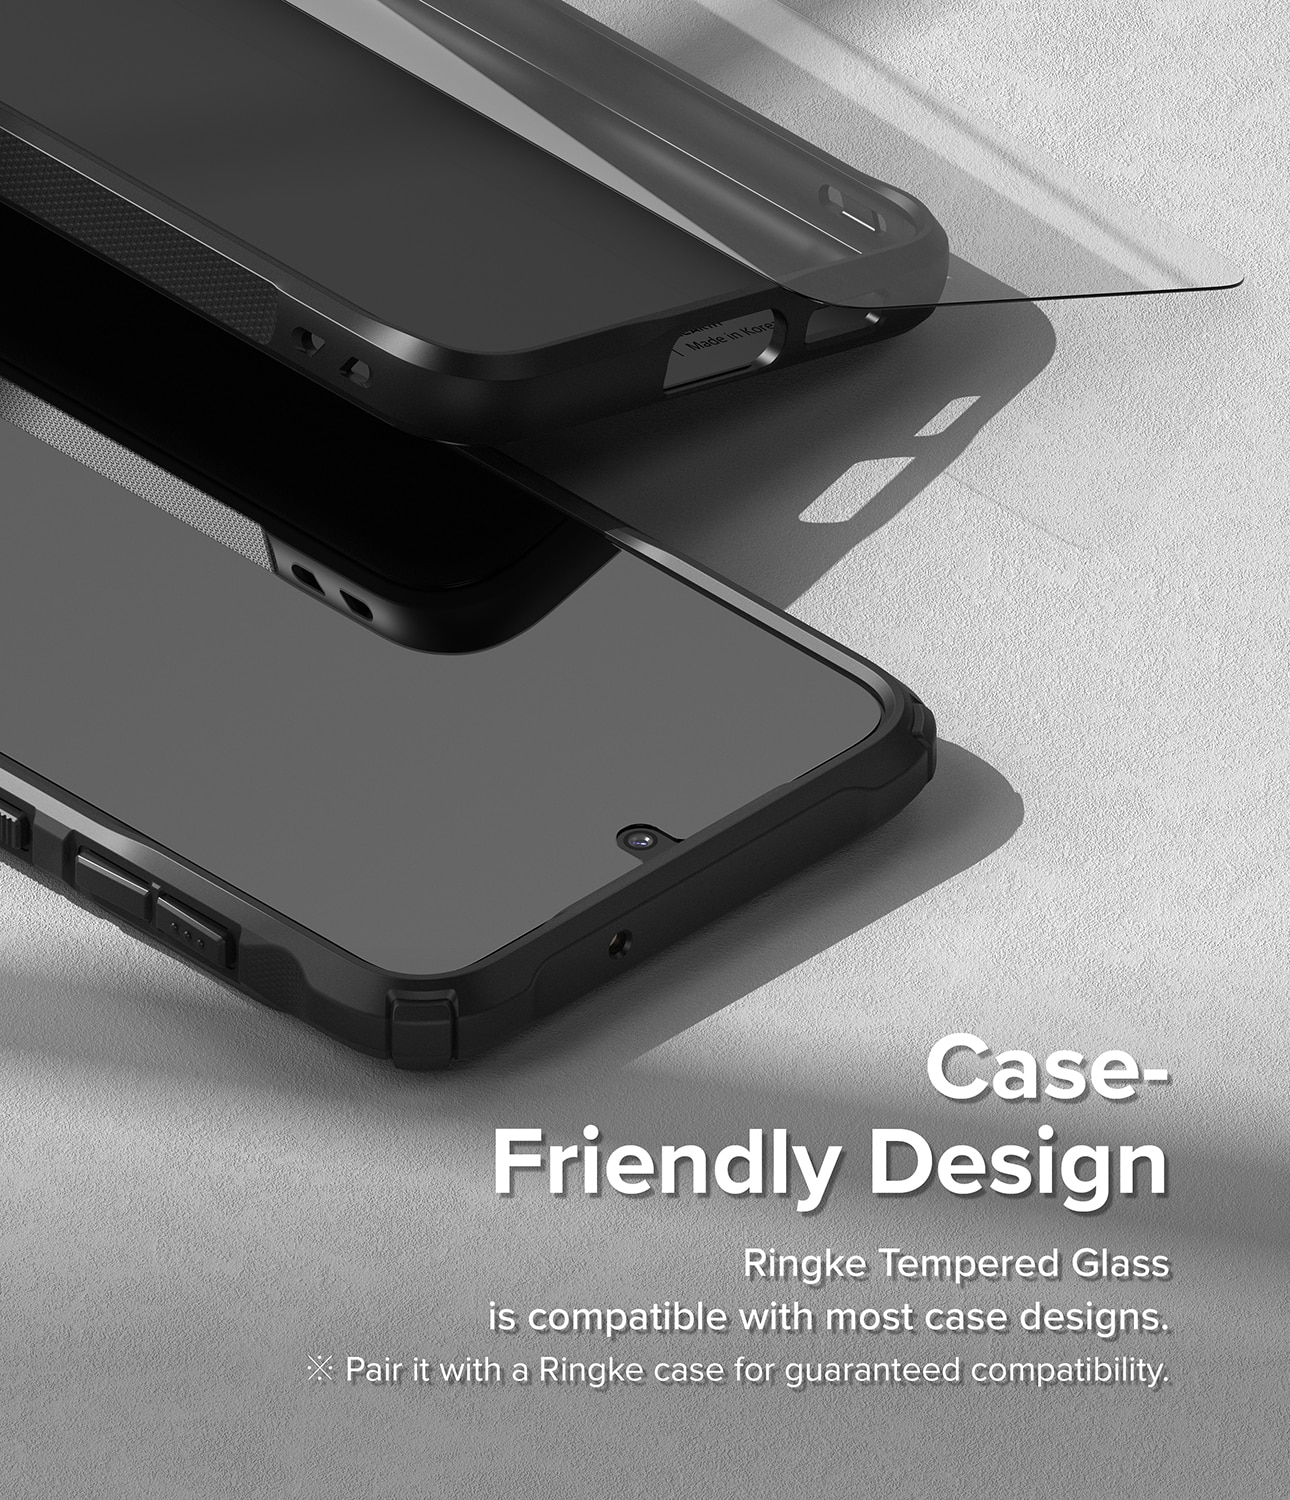 Samsung Galaxy S23 Skärmskydd i glas med monteringsverktyg (2-pack)